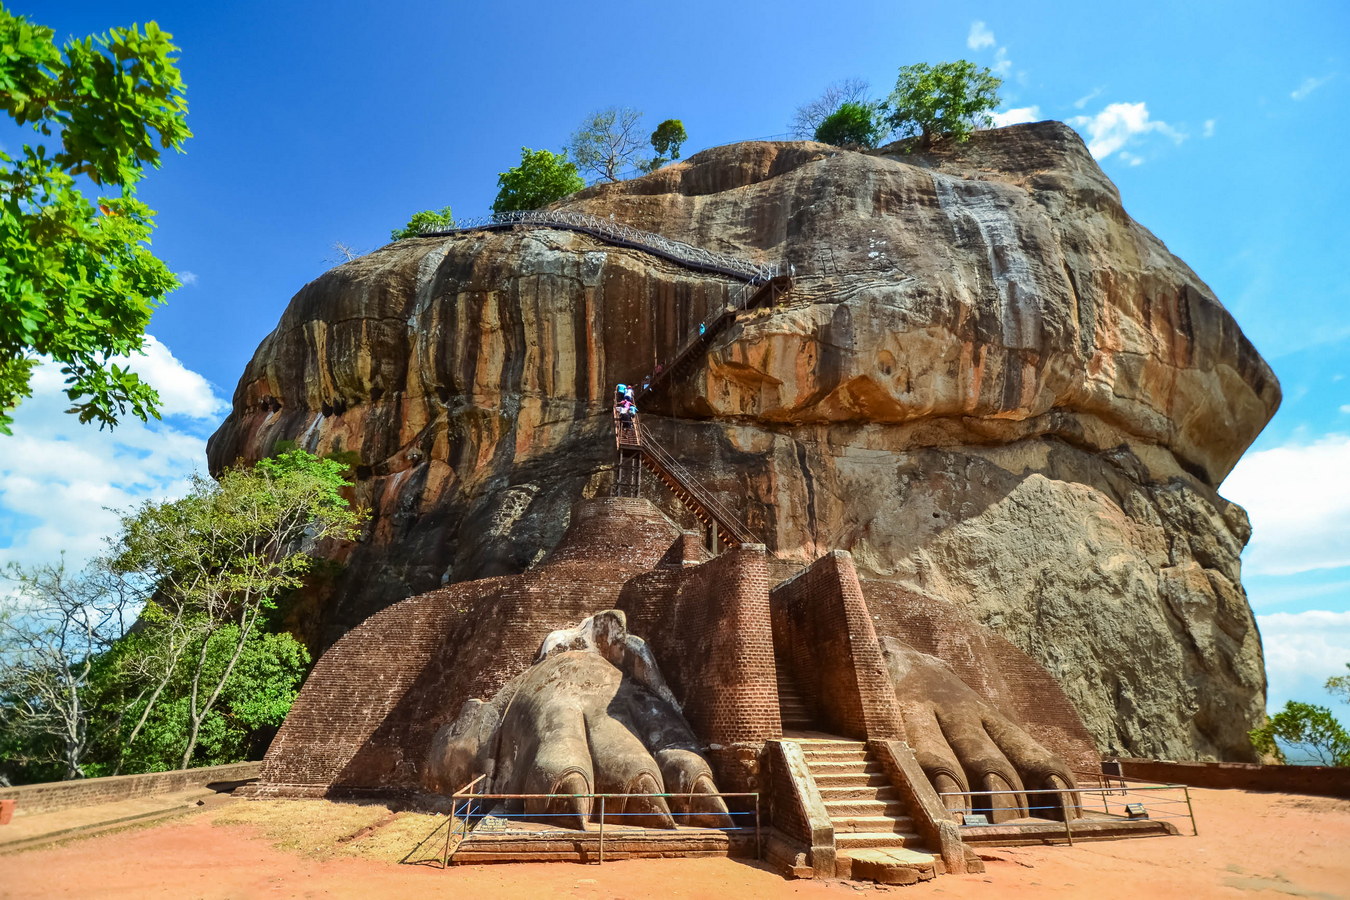 Chùm ảnh: Sigiriya – khối đá khổng lồ hình sư tử ở Sri Lanka